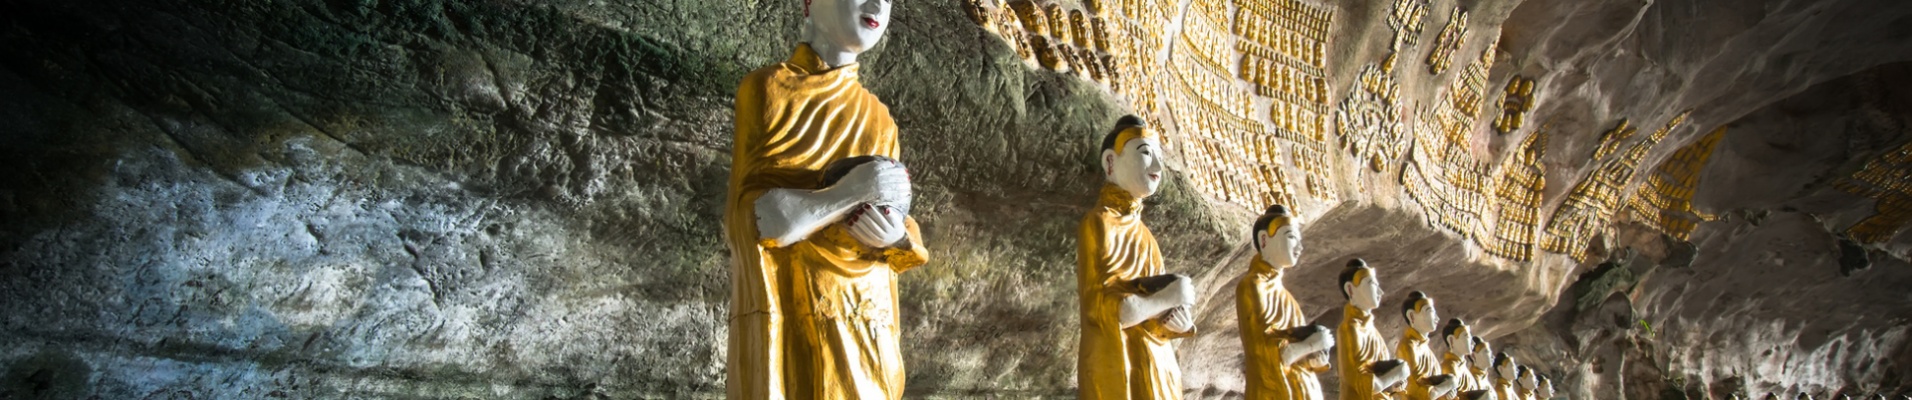 Bouddha, cave Sadan Sin Min, Hpa-An